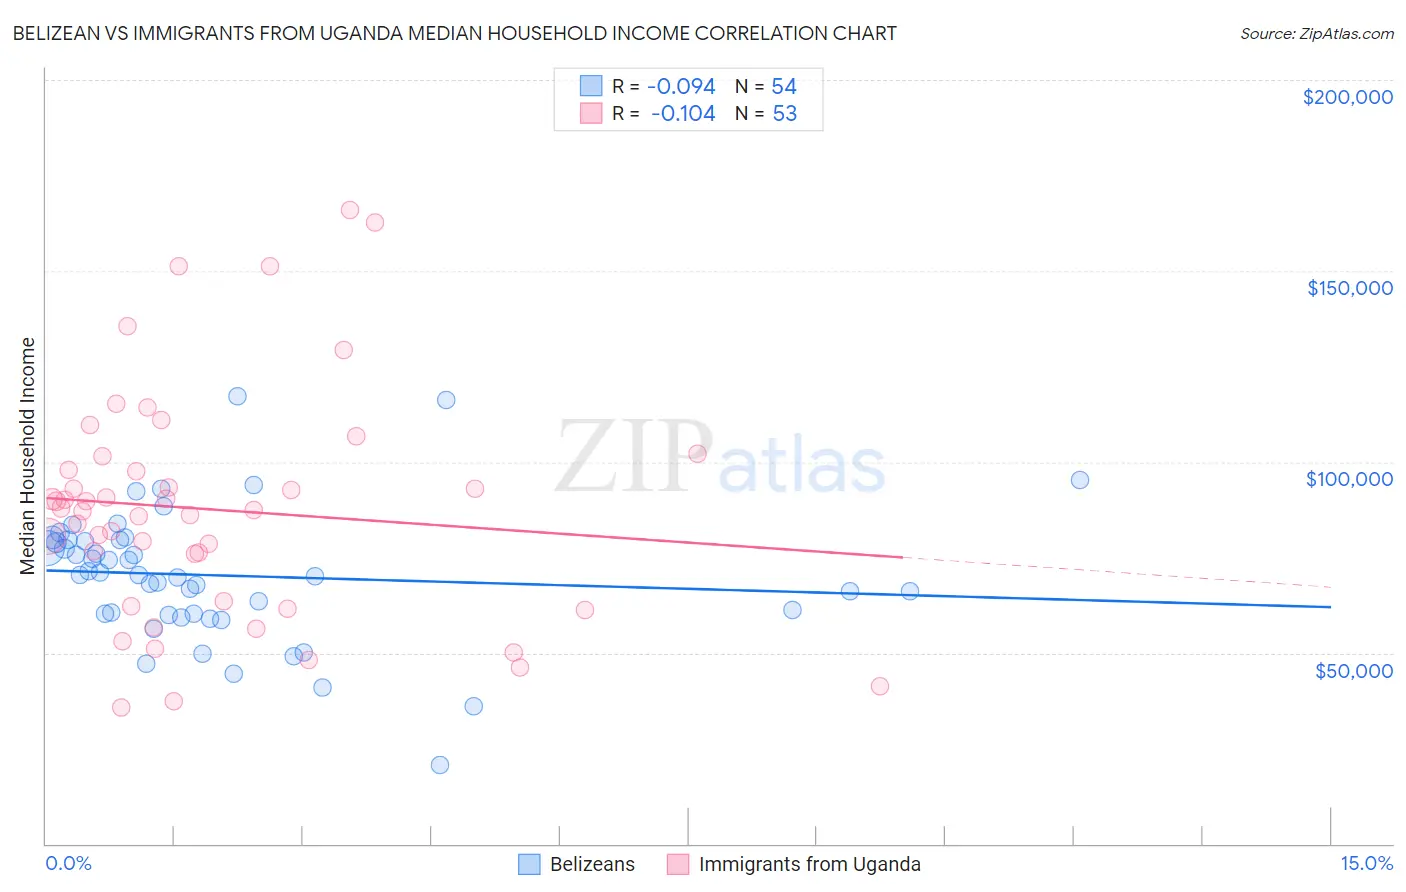 Belizean vs Immigrants from Uganda Median Household Income